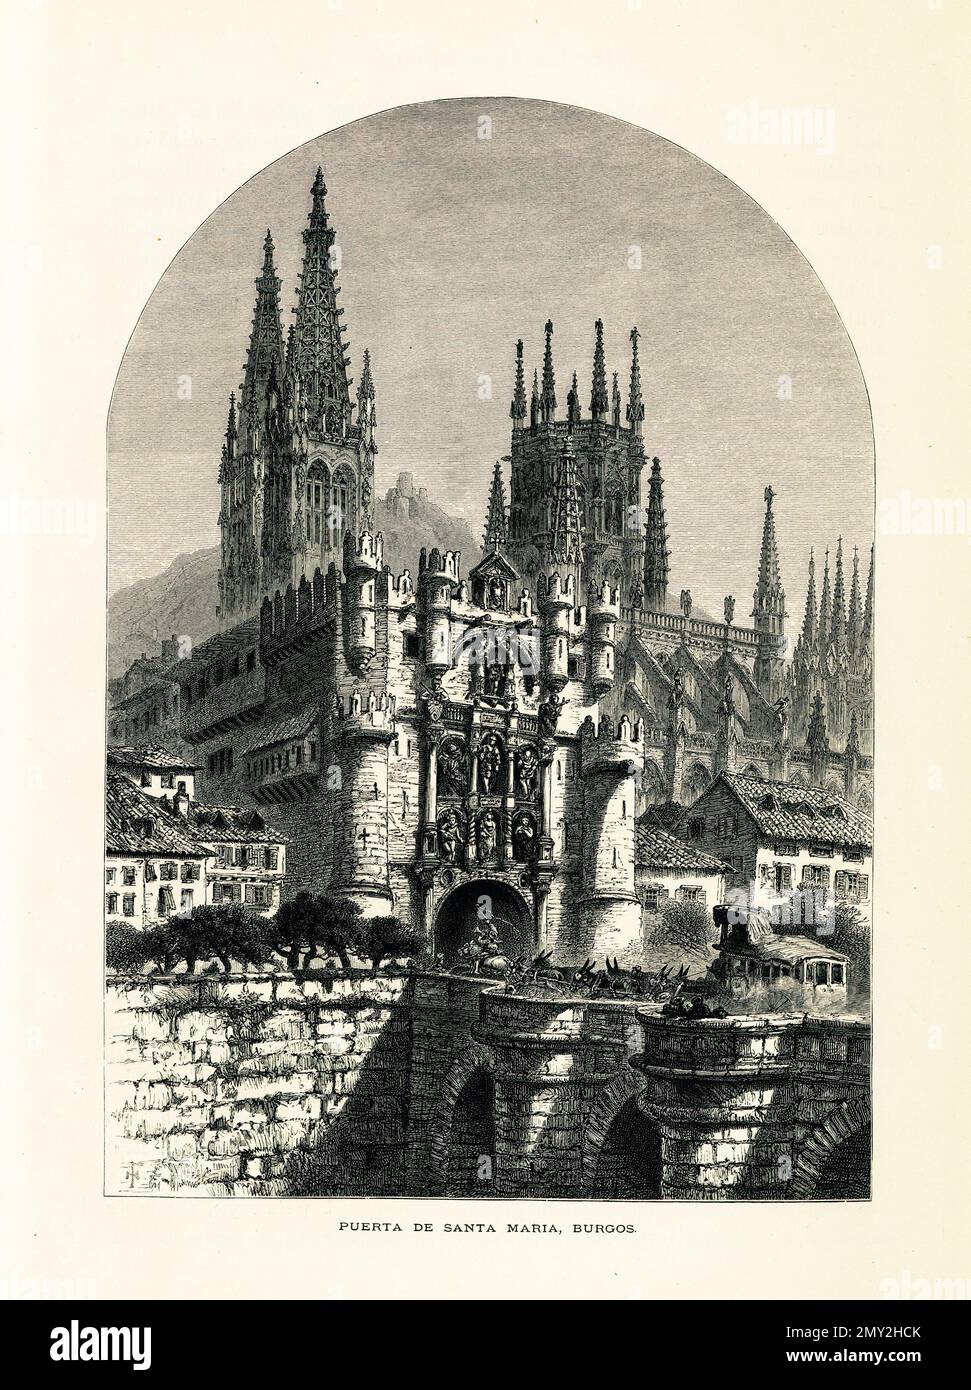 Antica incisione della Cattedrale di Burgos, sito patrimonio dell'umanità in stile gotico a Burgos, Spagna. Illustrazione pubblicata in picturesque Europe, Vol. III Foto Stock